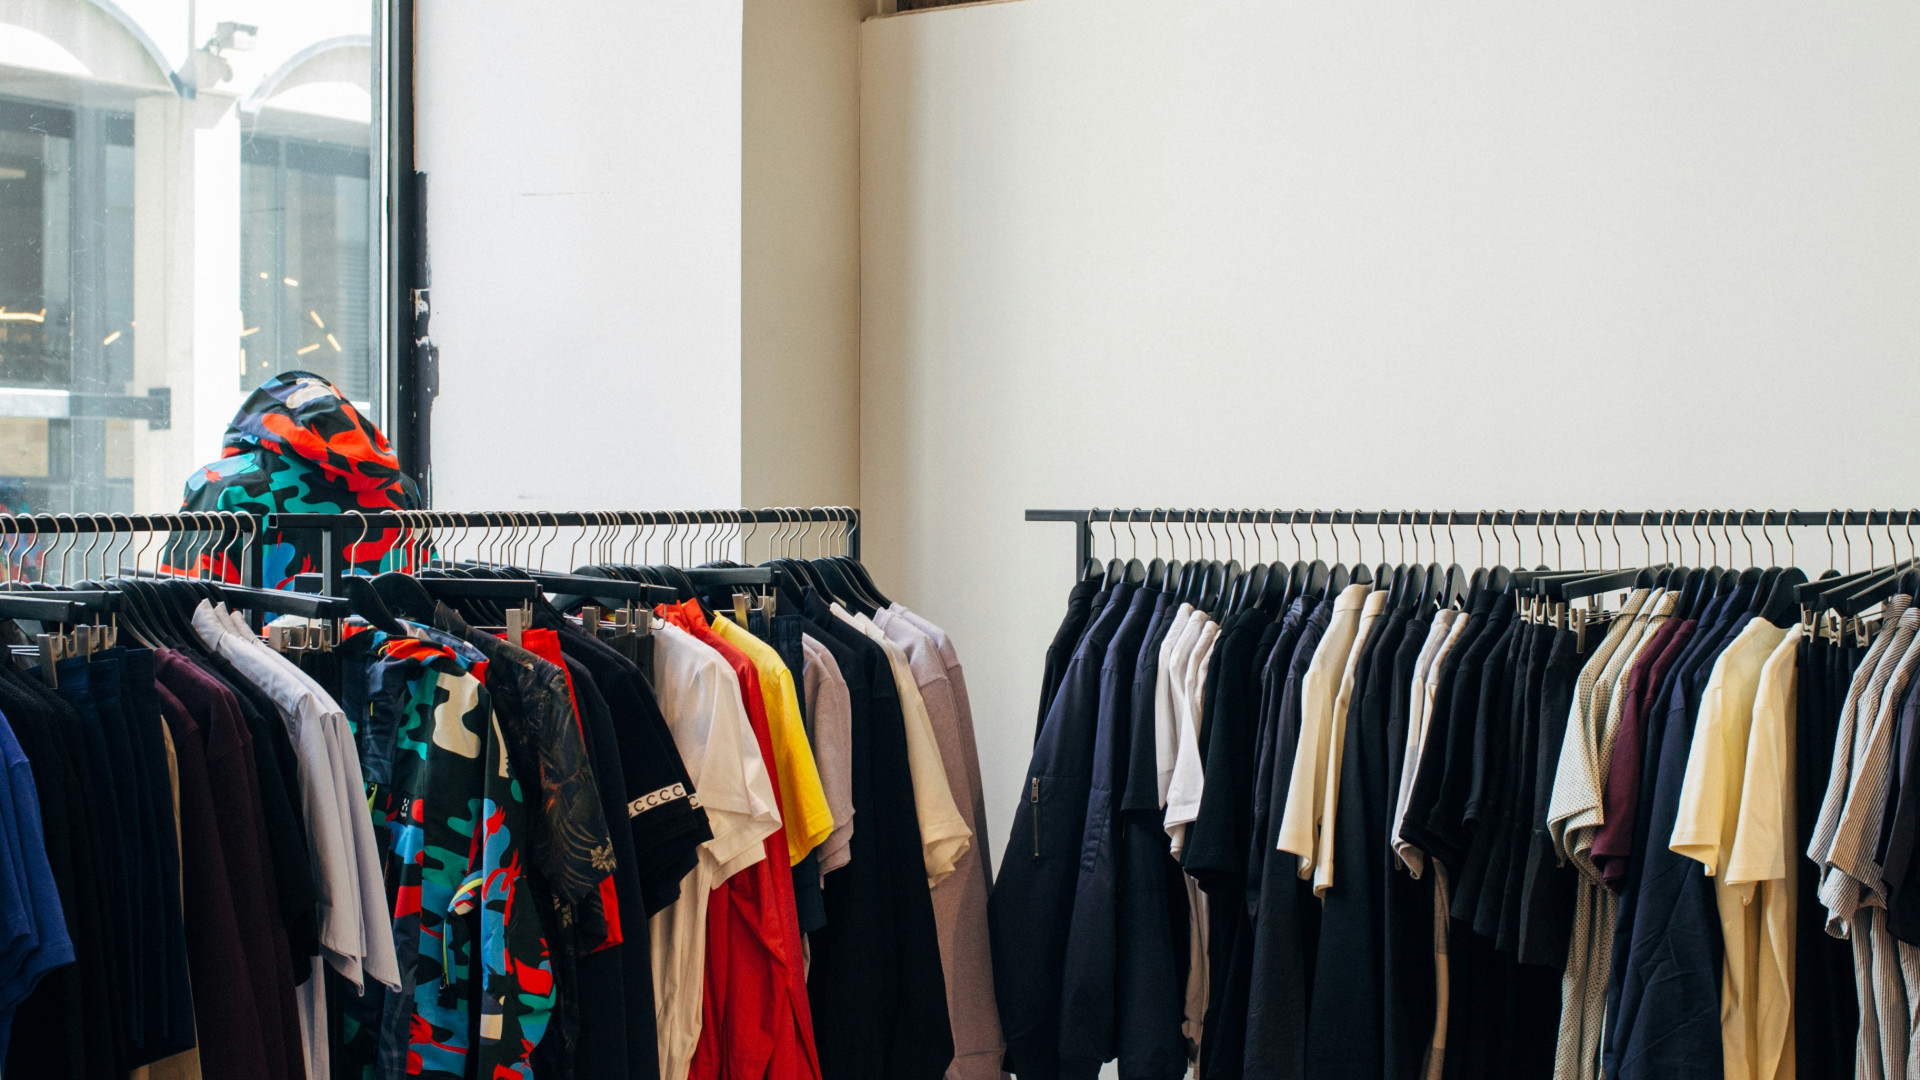 Professionnels de la mode : comment trouver vos futures collections ?